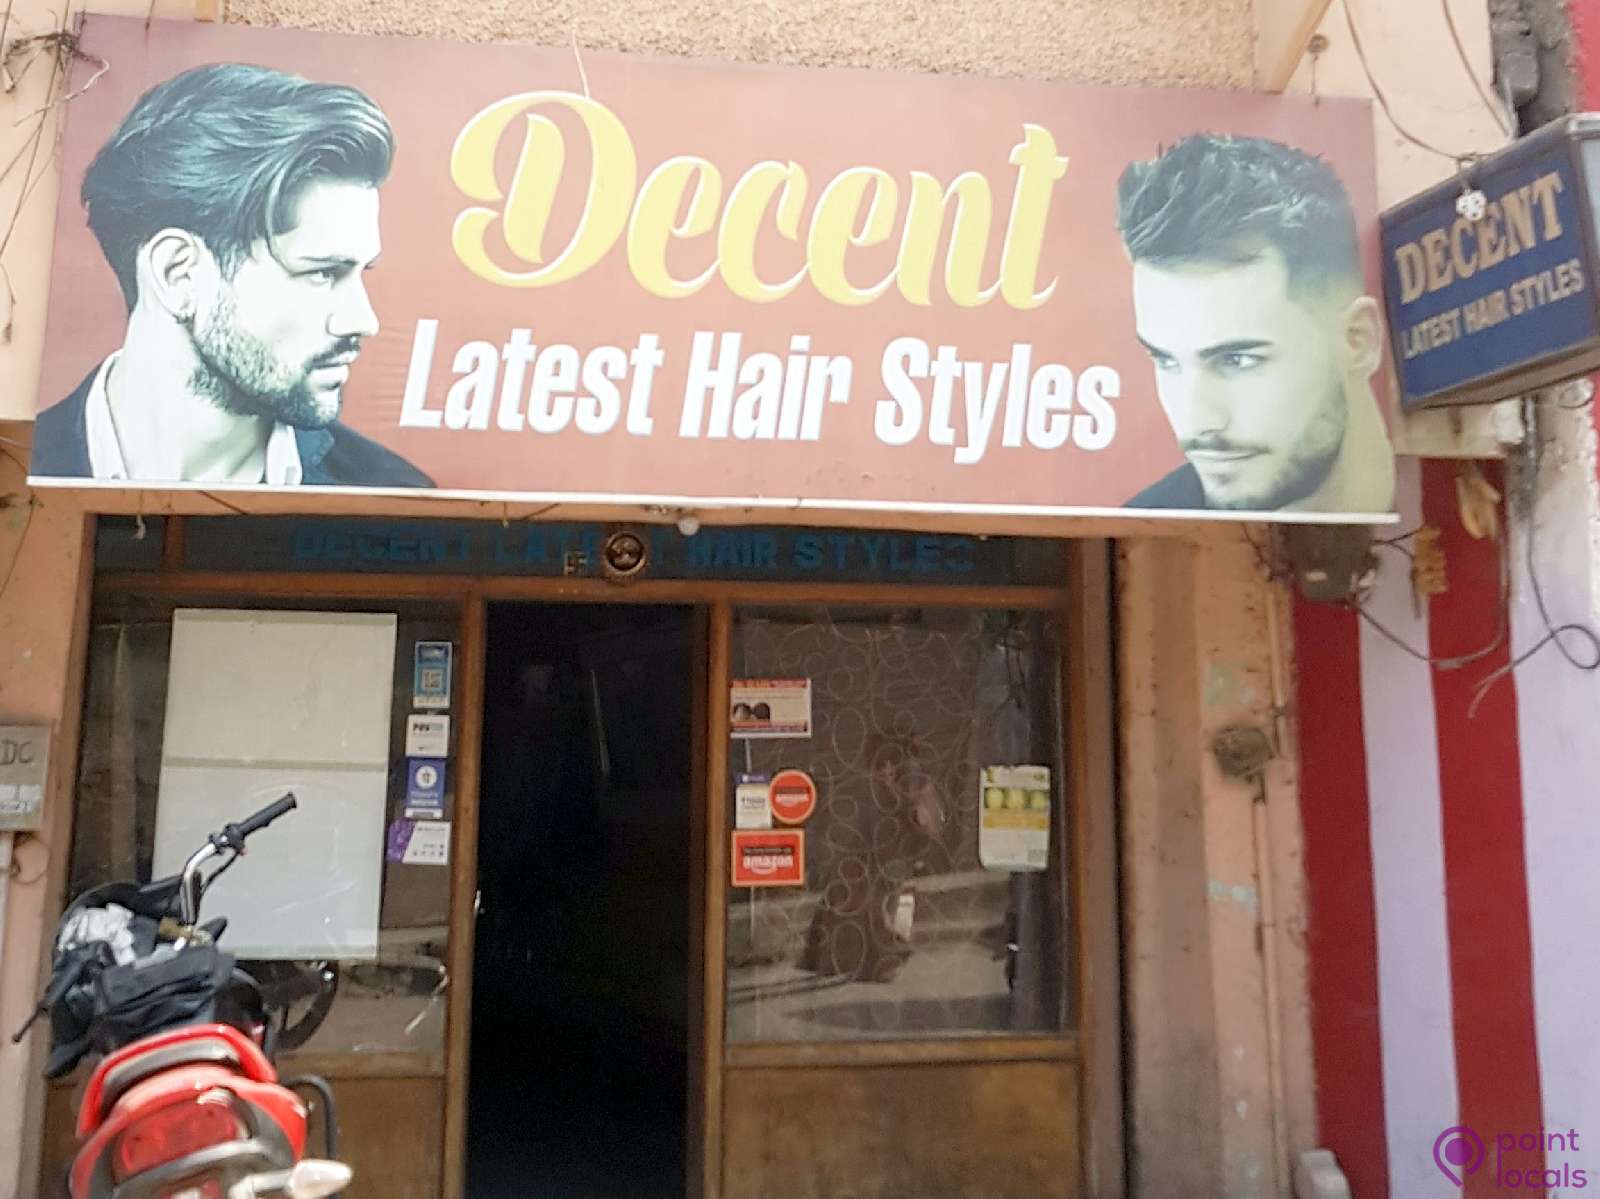 Decent Latest Hair Styles - Hair Salon in Hyderabad,Telangana | Pointlocals